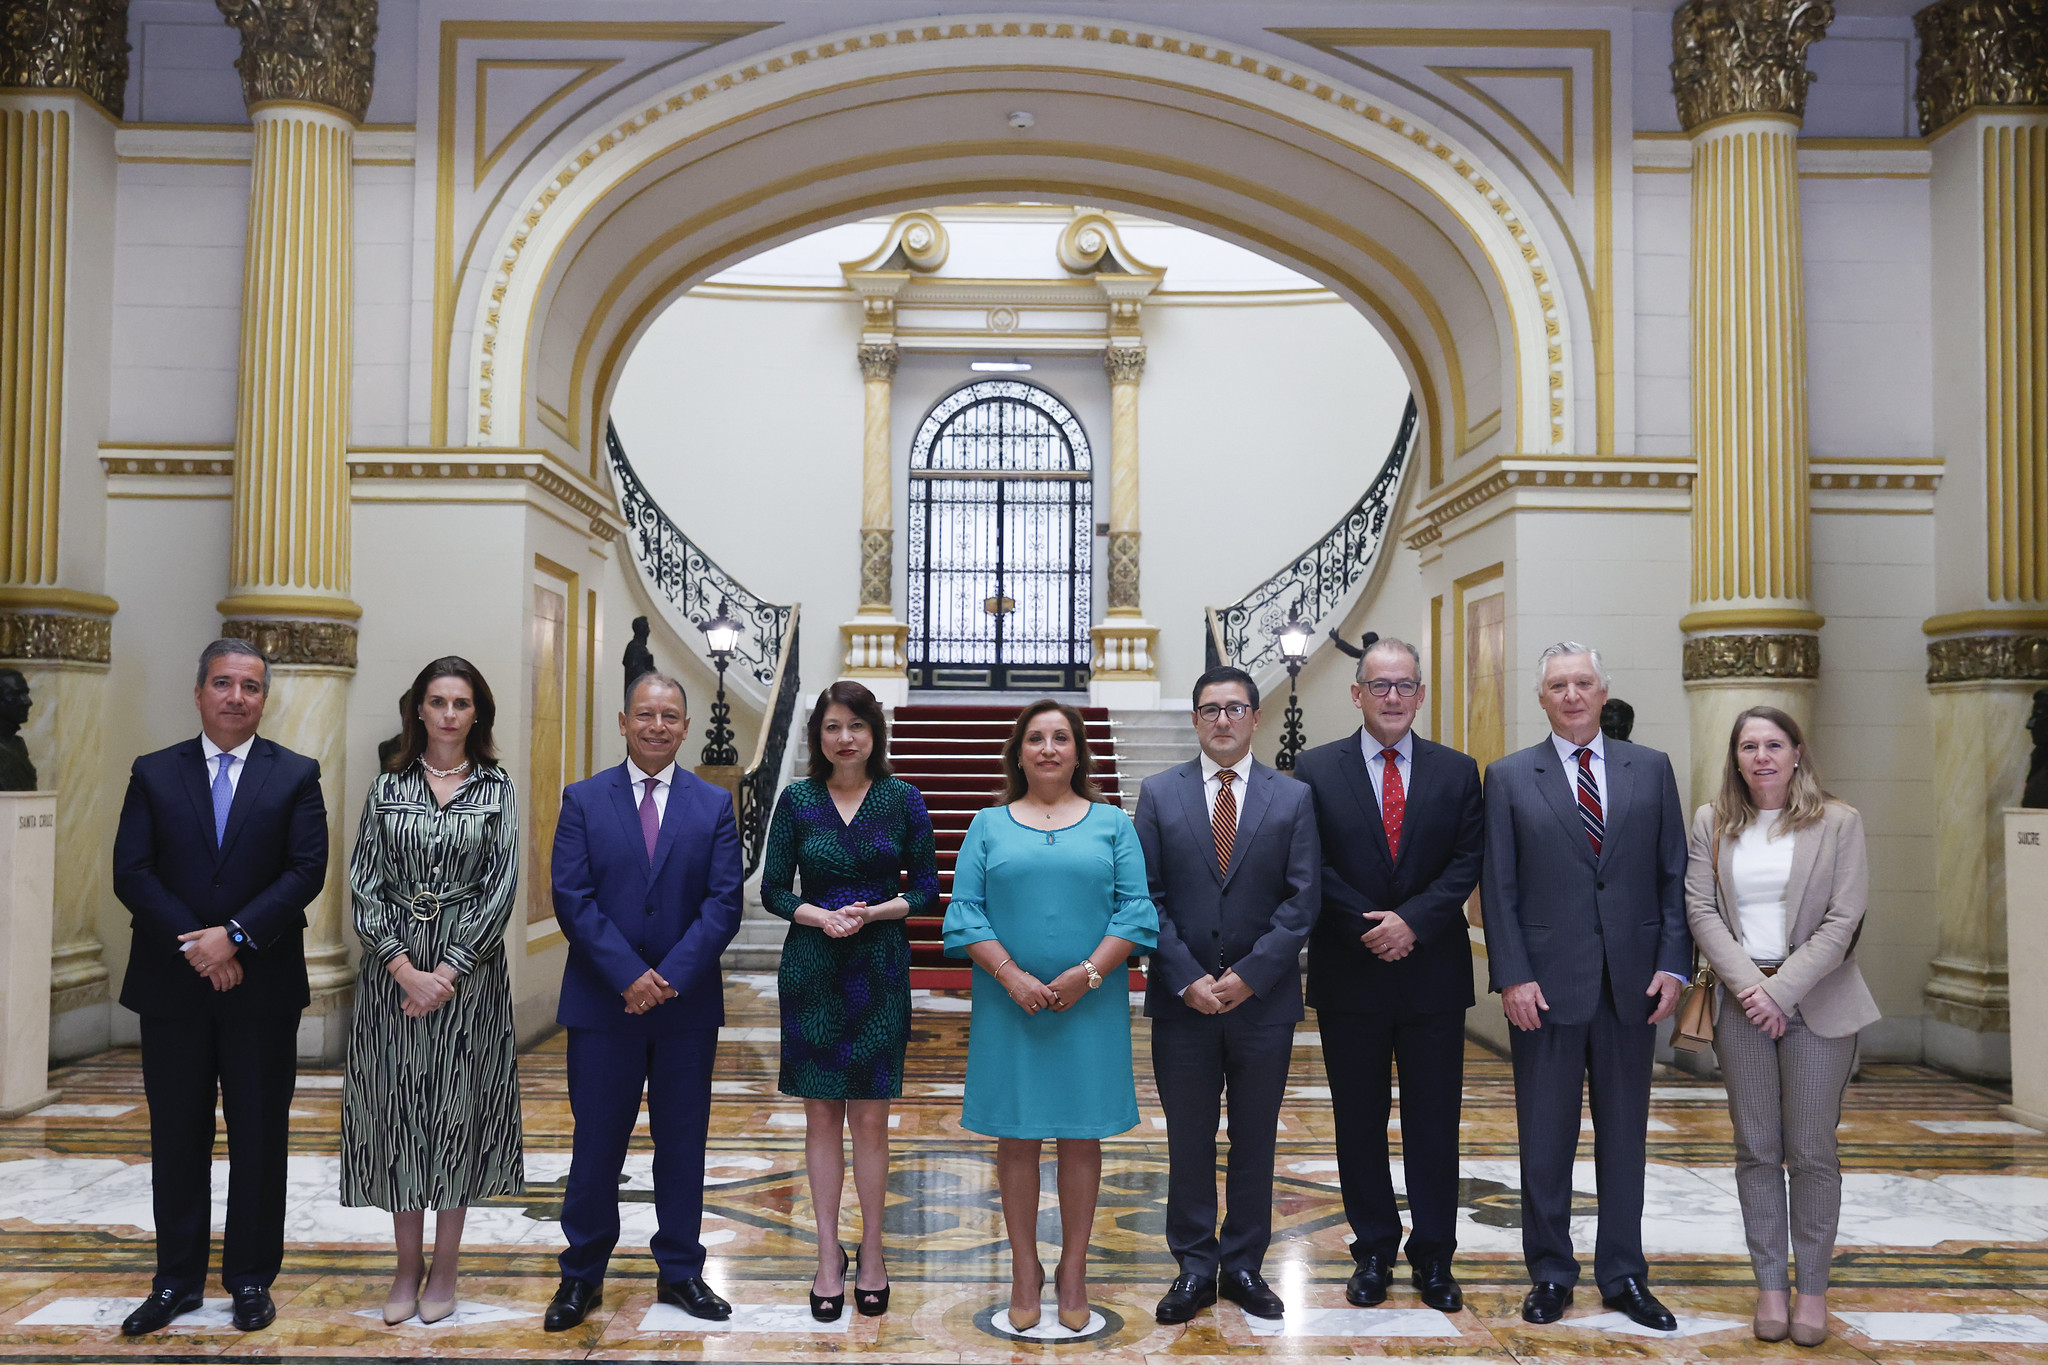 PERÚ: Presidenta Boluarte ratifica compromiso de promover inversiones junto con el sector privado a fin de reducir las brechas sociales